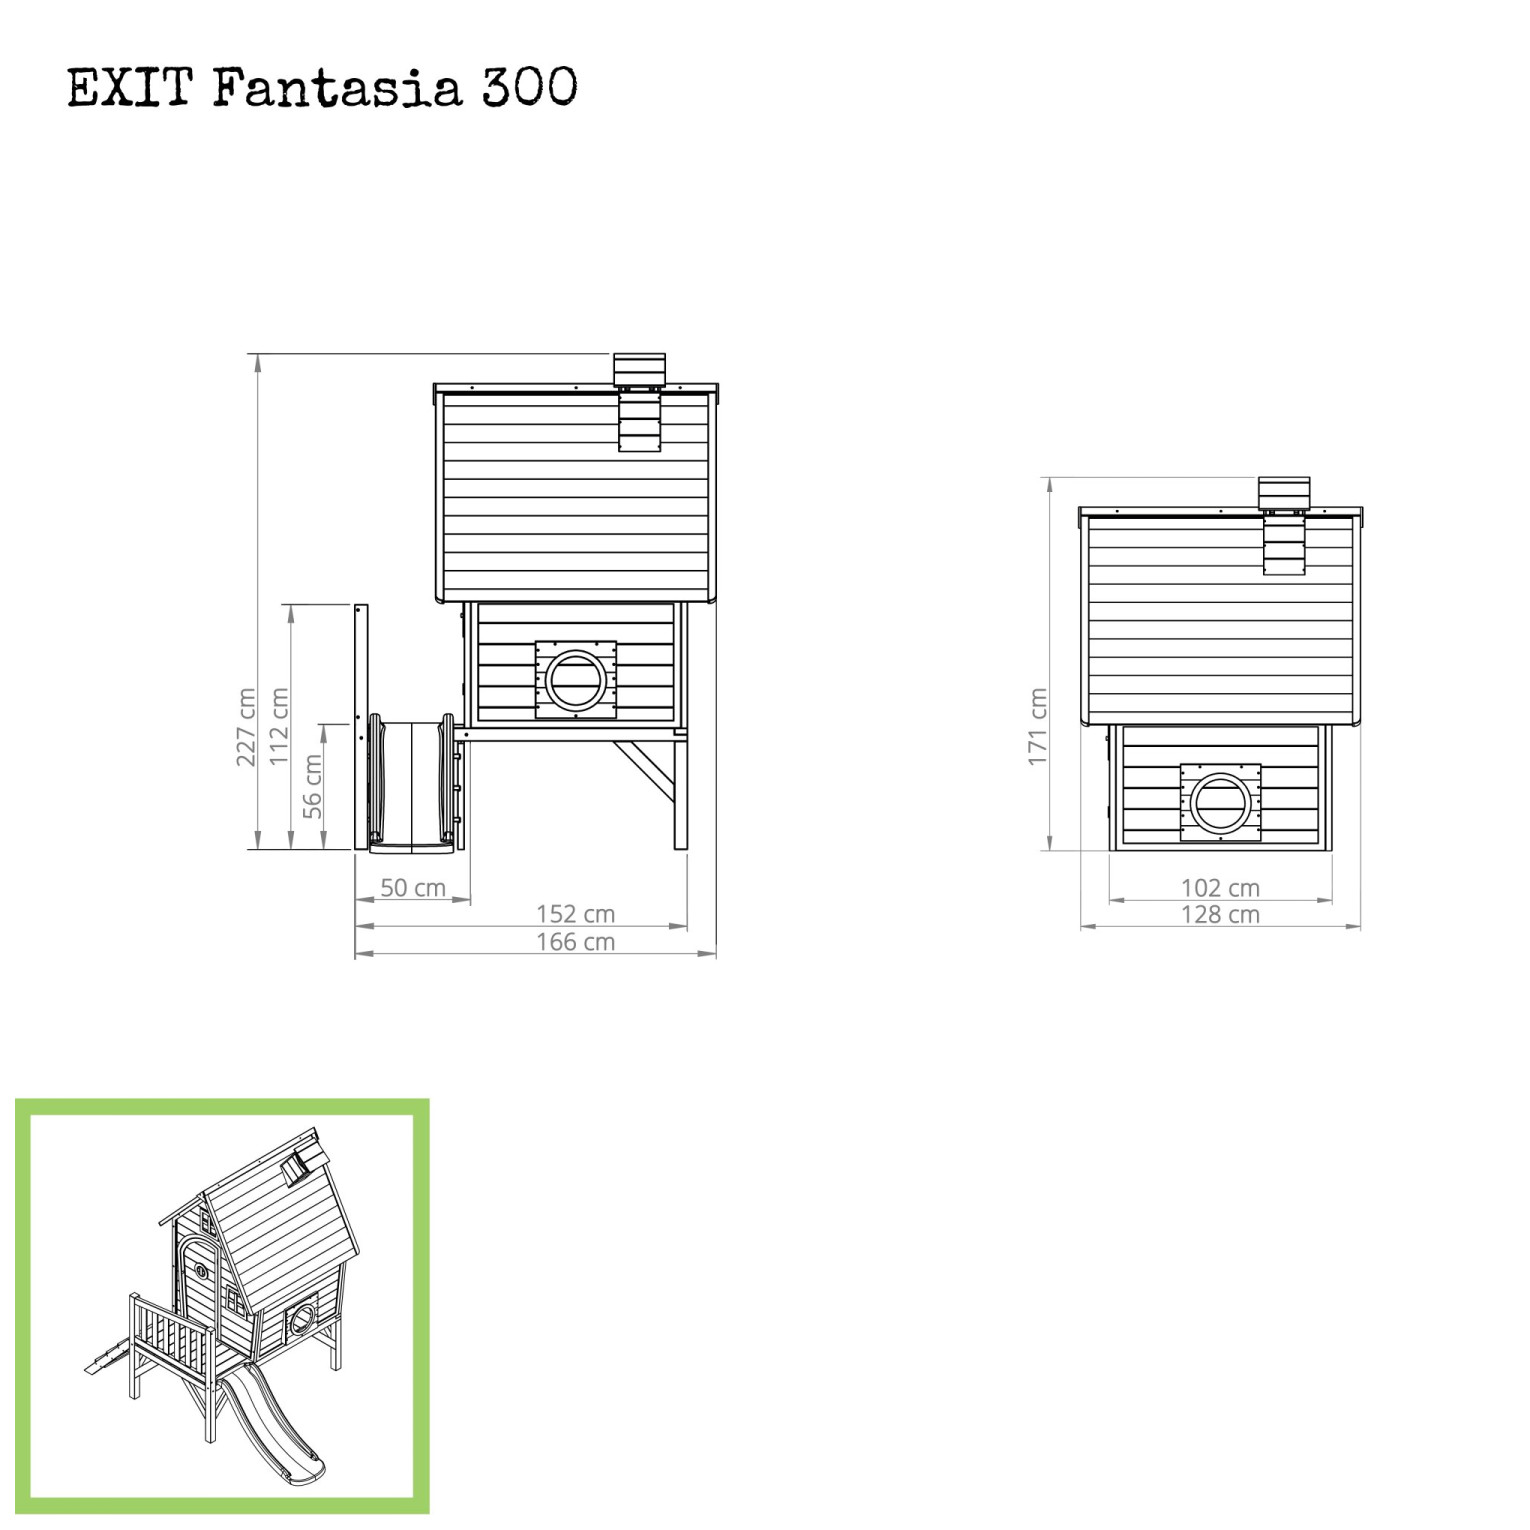 EXIT Fantasia 300 houten speelhuis - groen